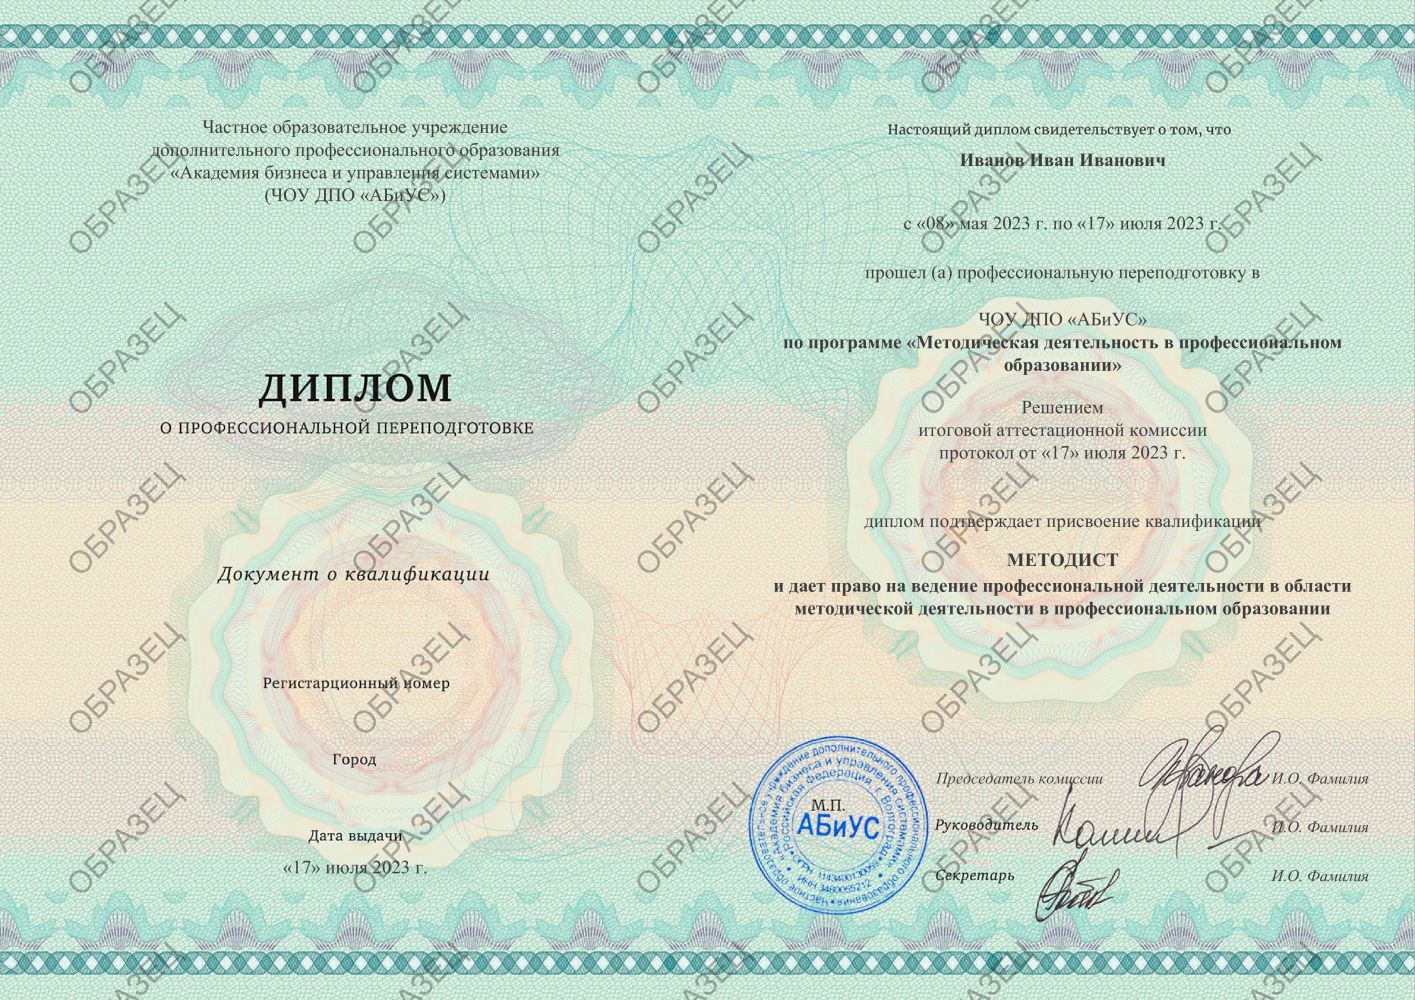 Диплом Методическая деятельность в профессиональном образовании 280 часов 8563 руб.